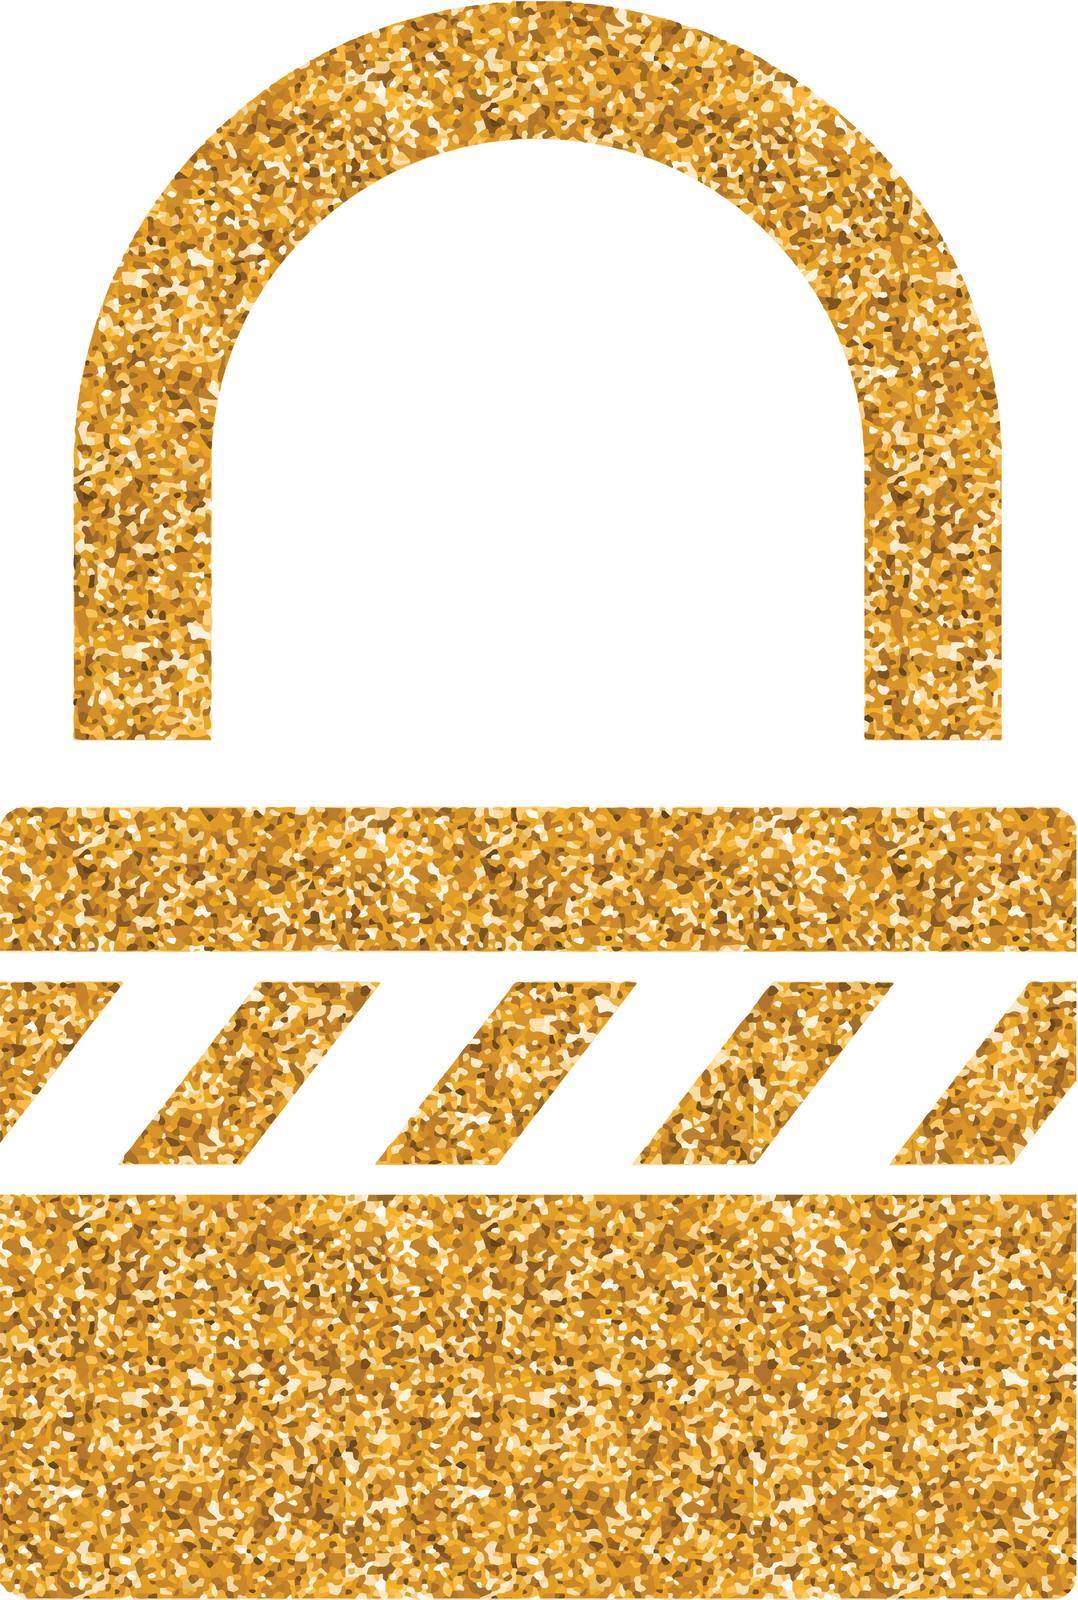 Padlock icon in gold glitter texture. Sparkle luxury style vector illustration.